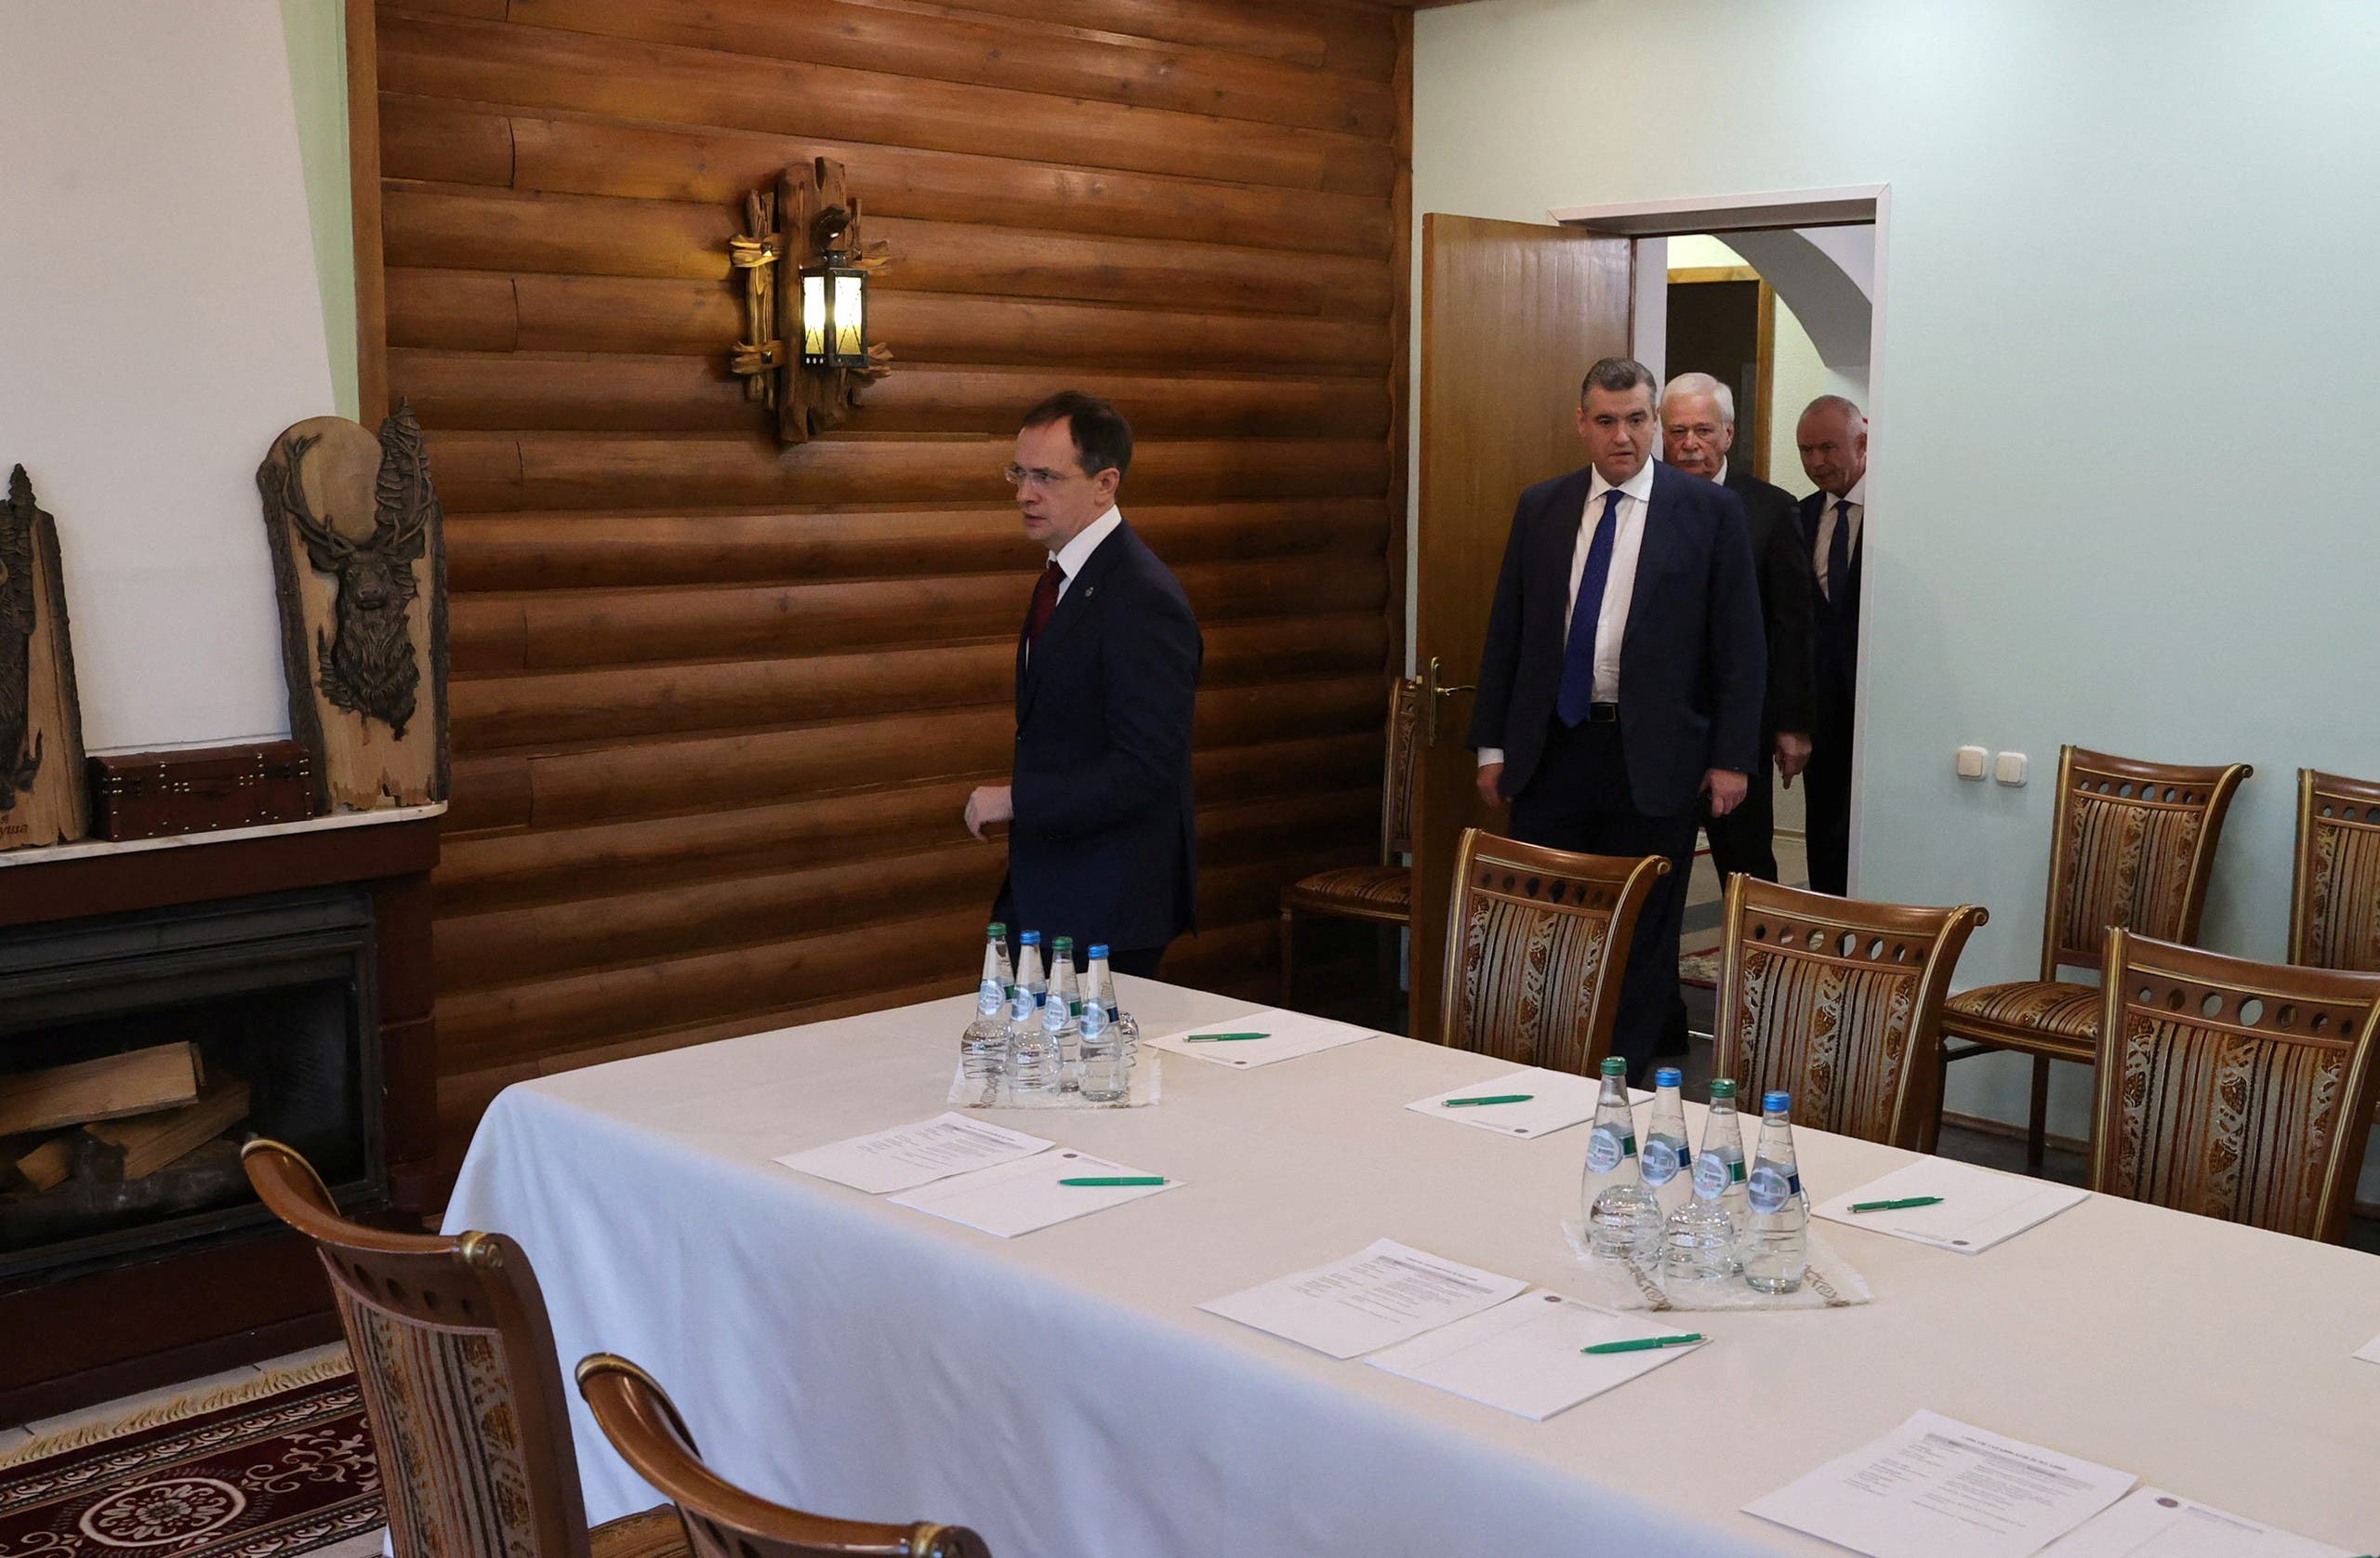 رئيس الوفد الروسي المفاوض مع أوكرانيا فلاديمير ميدينسكي في جولة مفاوضات سابقة مع الأوكران في بيلاروسيا - أرشيفية من رويترز